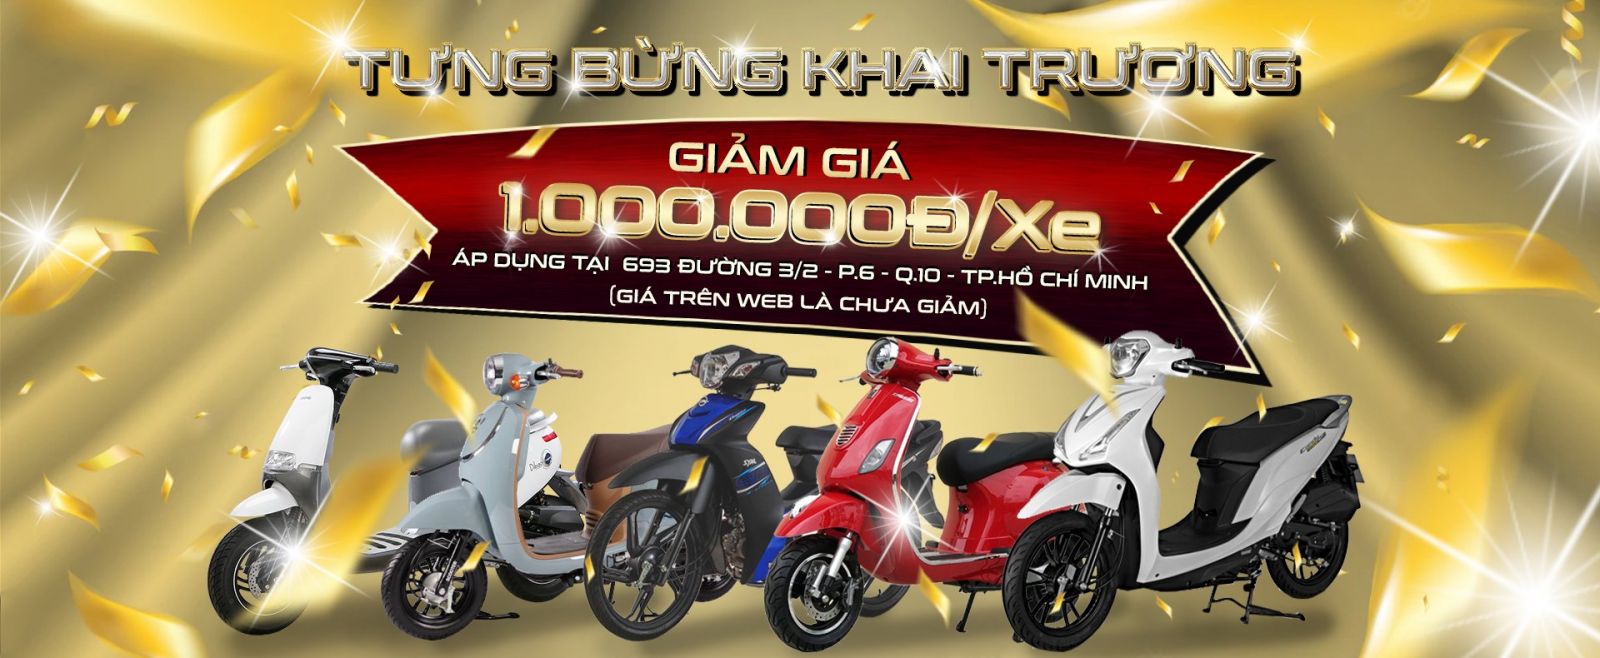 Giảm ngay 1.000.000 đồng khai trương chi nhánh mới tại Quận 10 - Hồ Chí Minh